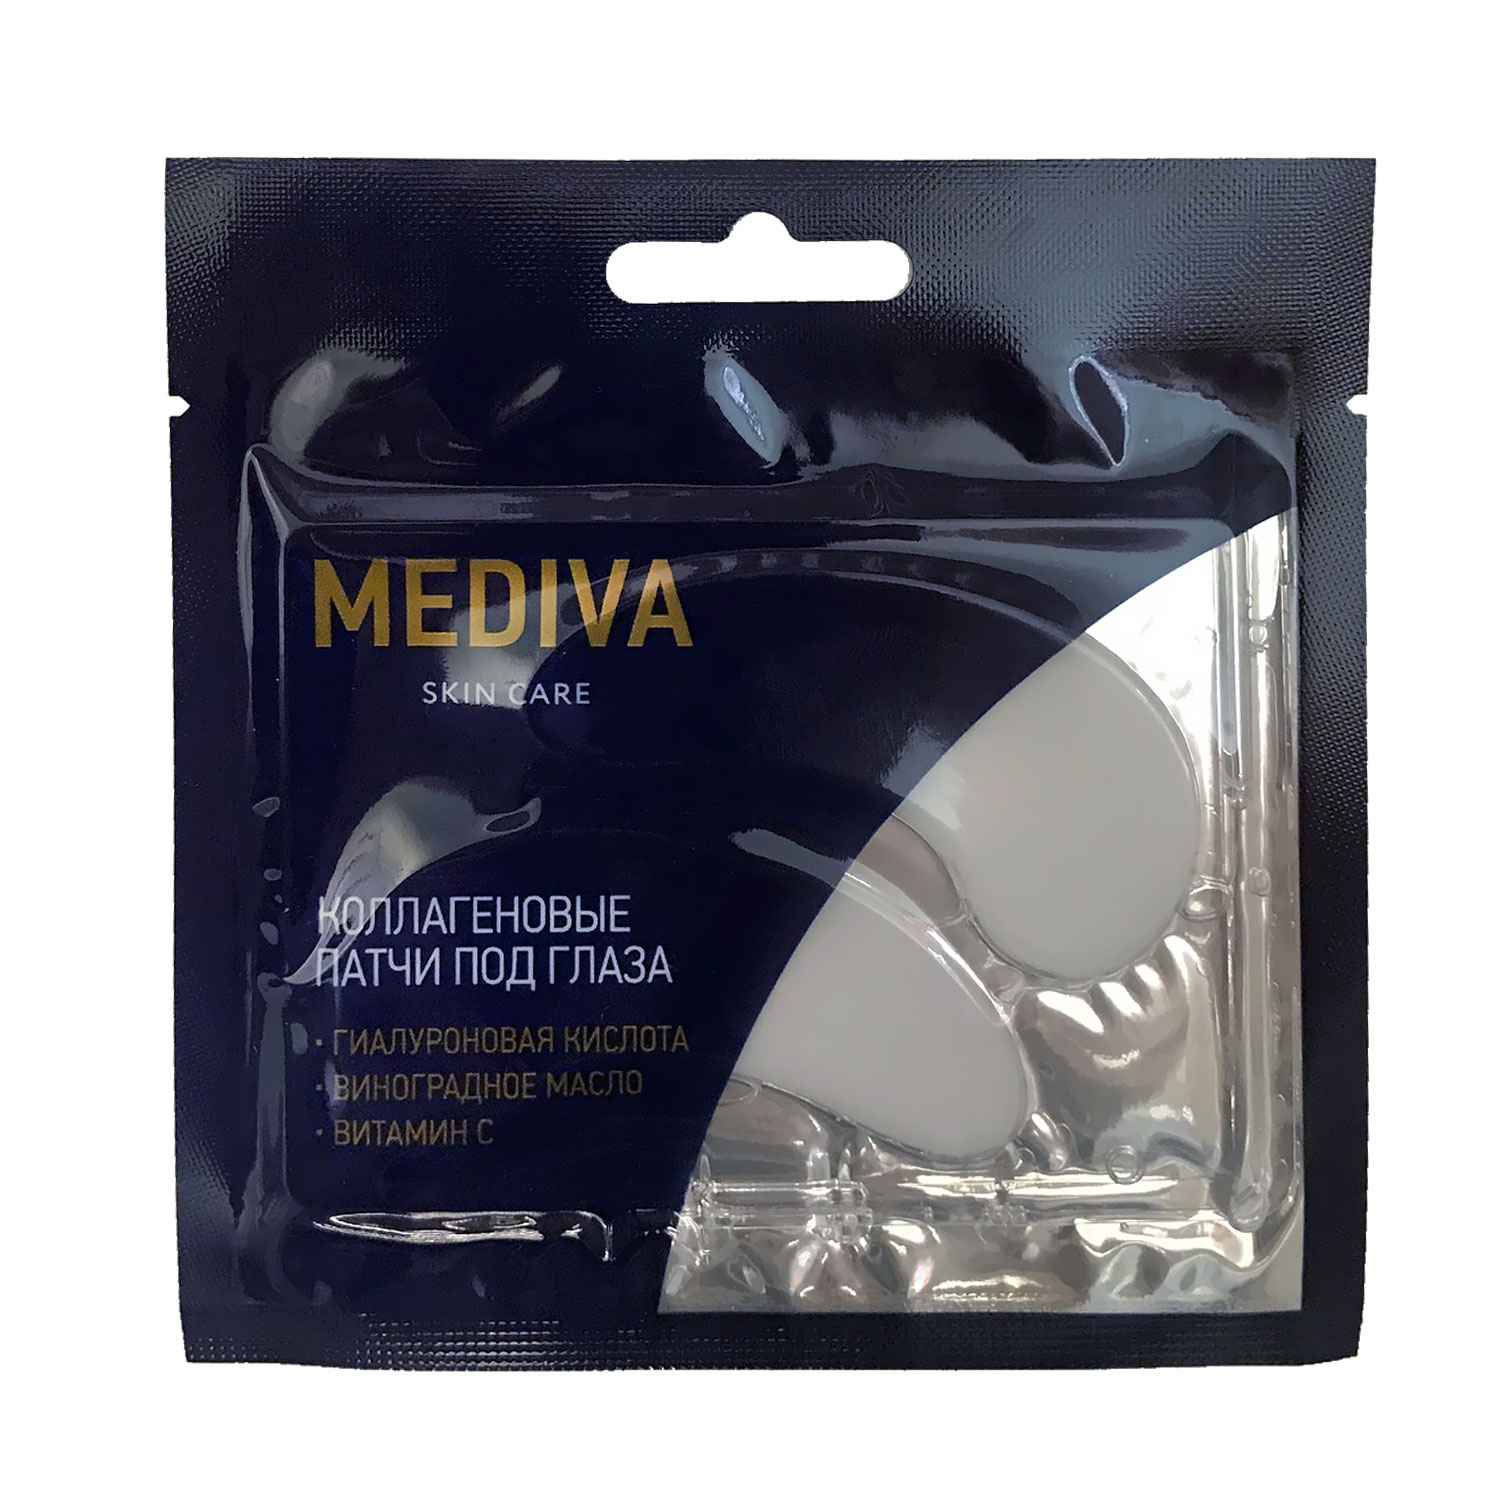 Купить Медива патчи коллагеновые под глаза с витамином С №2, Coast Pacific Limited